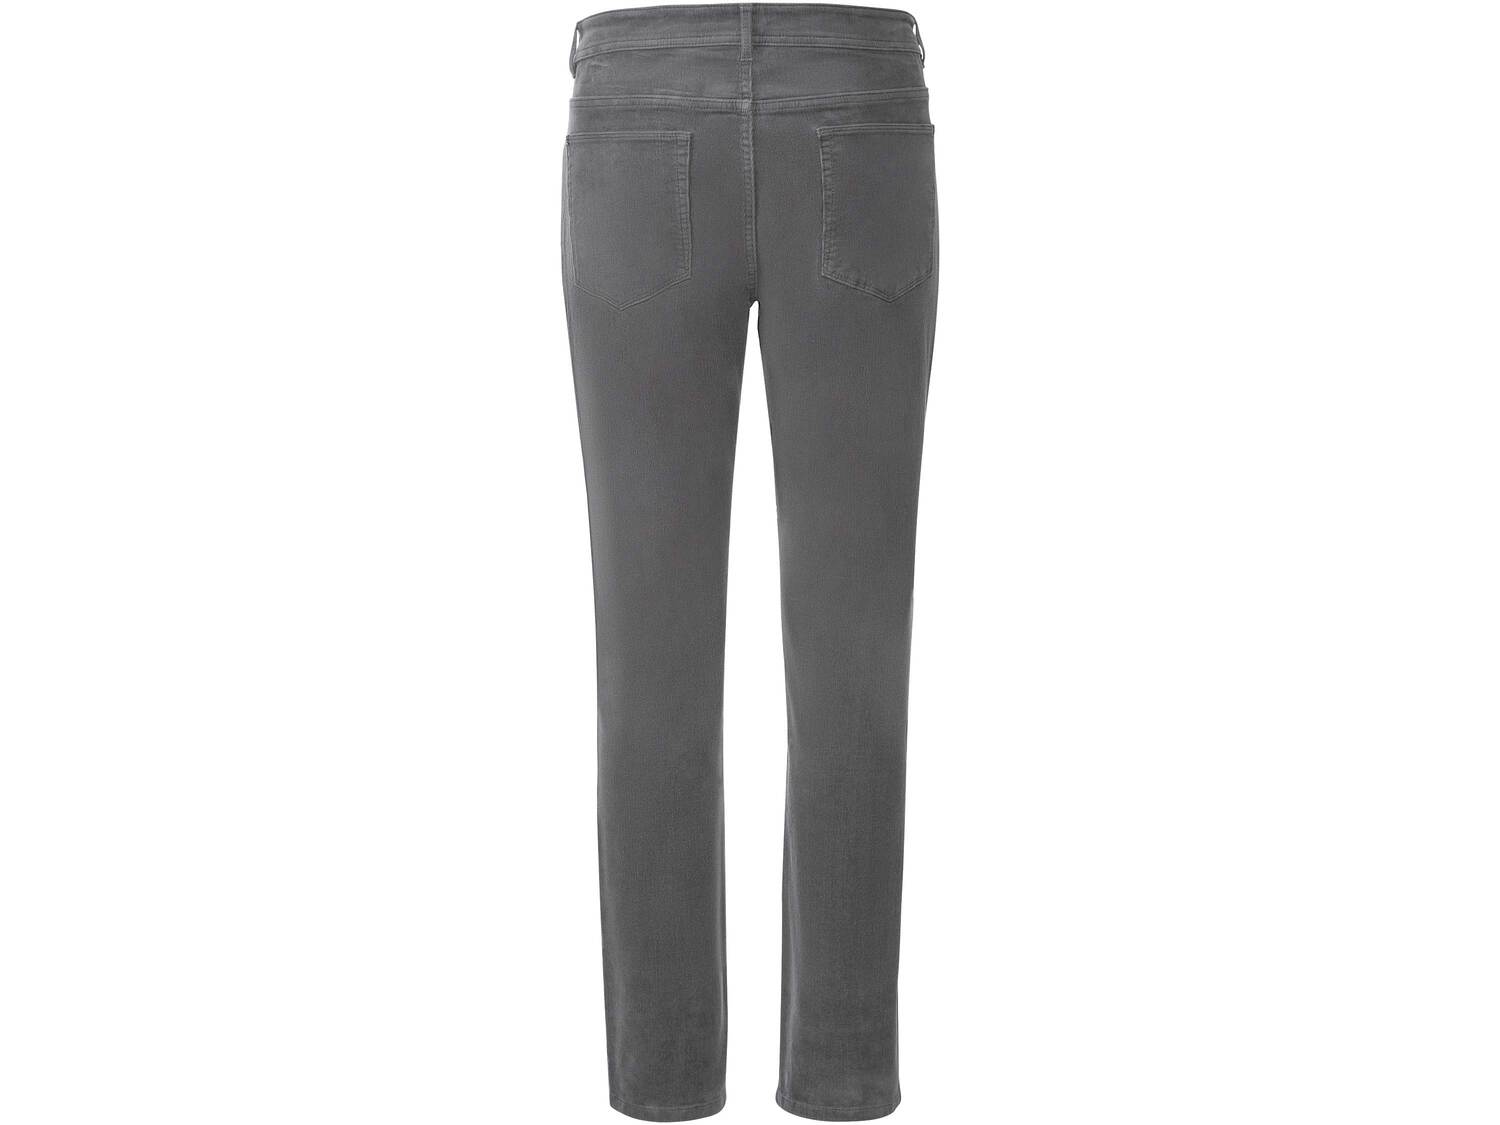 Spodnie sztruksowe męskie Livergy, cena 39,99 PLN 
- rozmiary: 48-56
- 99% bawełny, ...